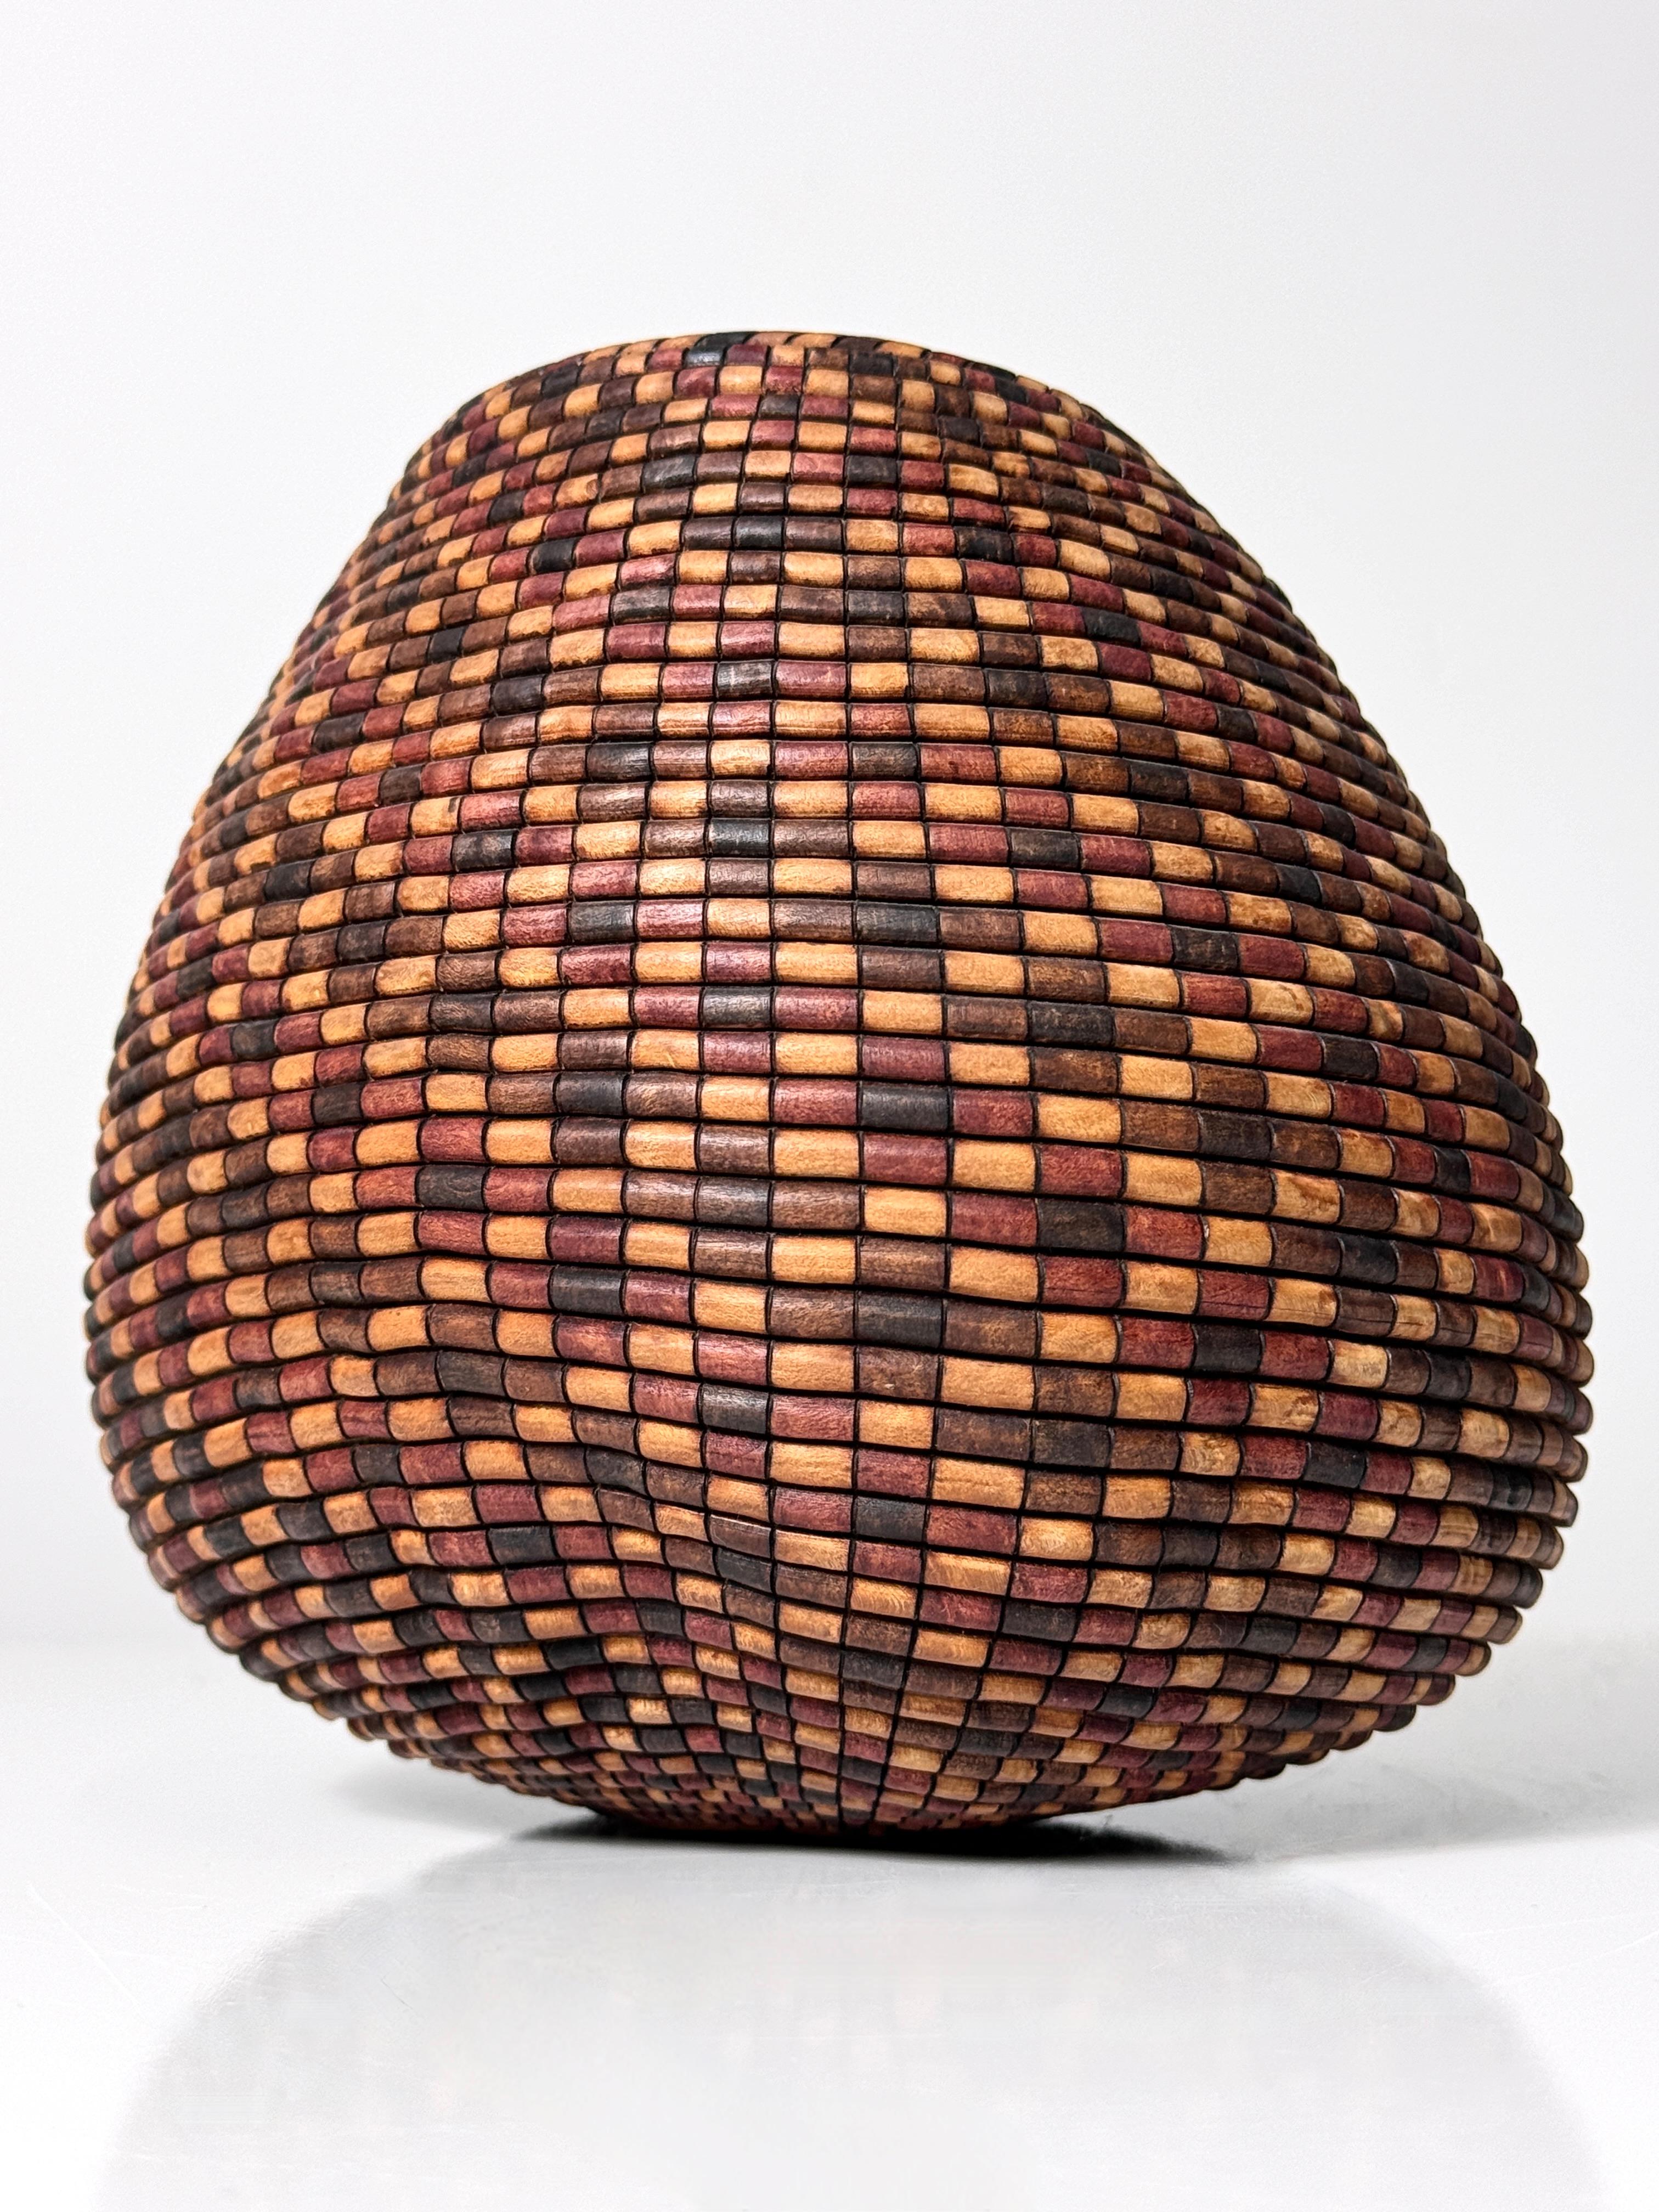 Vase en bois tourné de l'artisan américain David Nittmann circa 1990
Intitulé Black Lace of the Basket Illusion Series (Dentelle noire de la série Basket Illusion)

Incroyable pièce en madrone tourné, brûlé et teinté pour ressembler à un